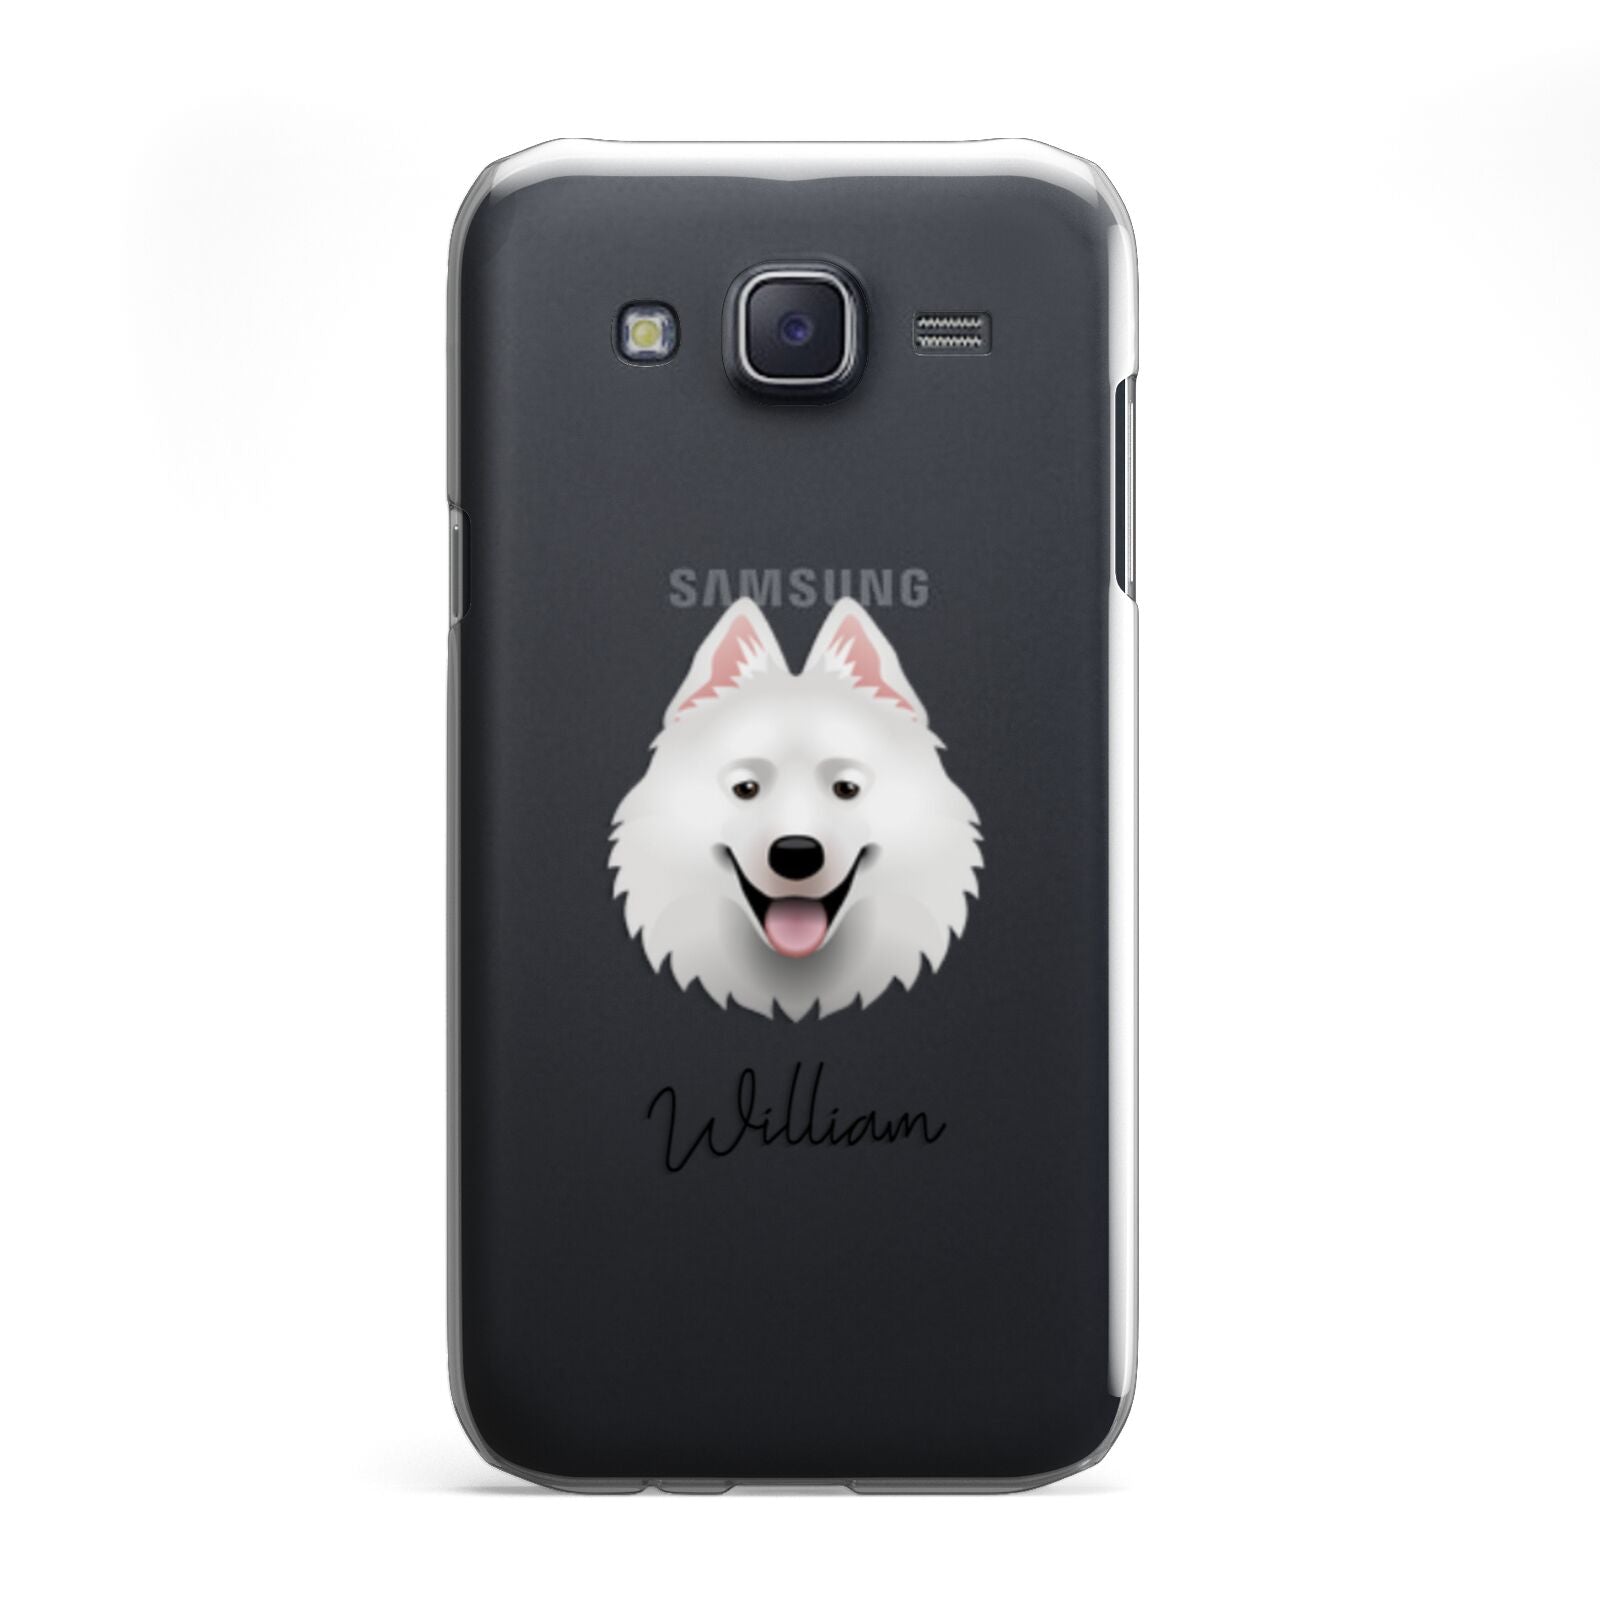 Samoyed Personalised Samsung Galaxy J5 Case